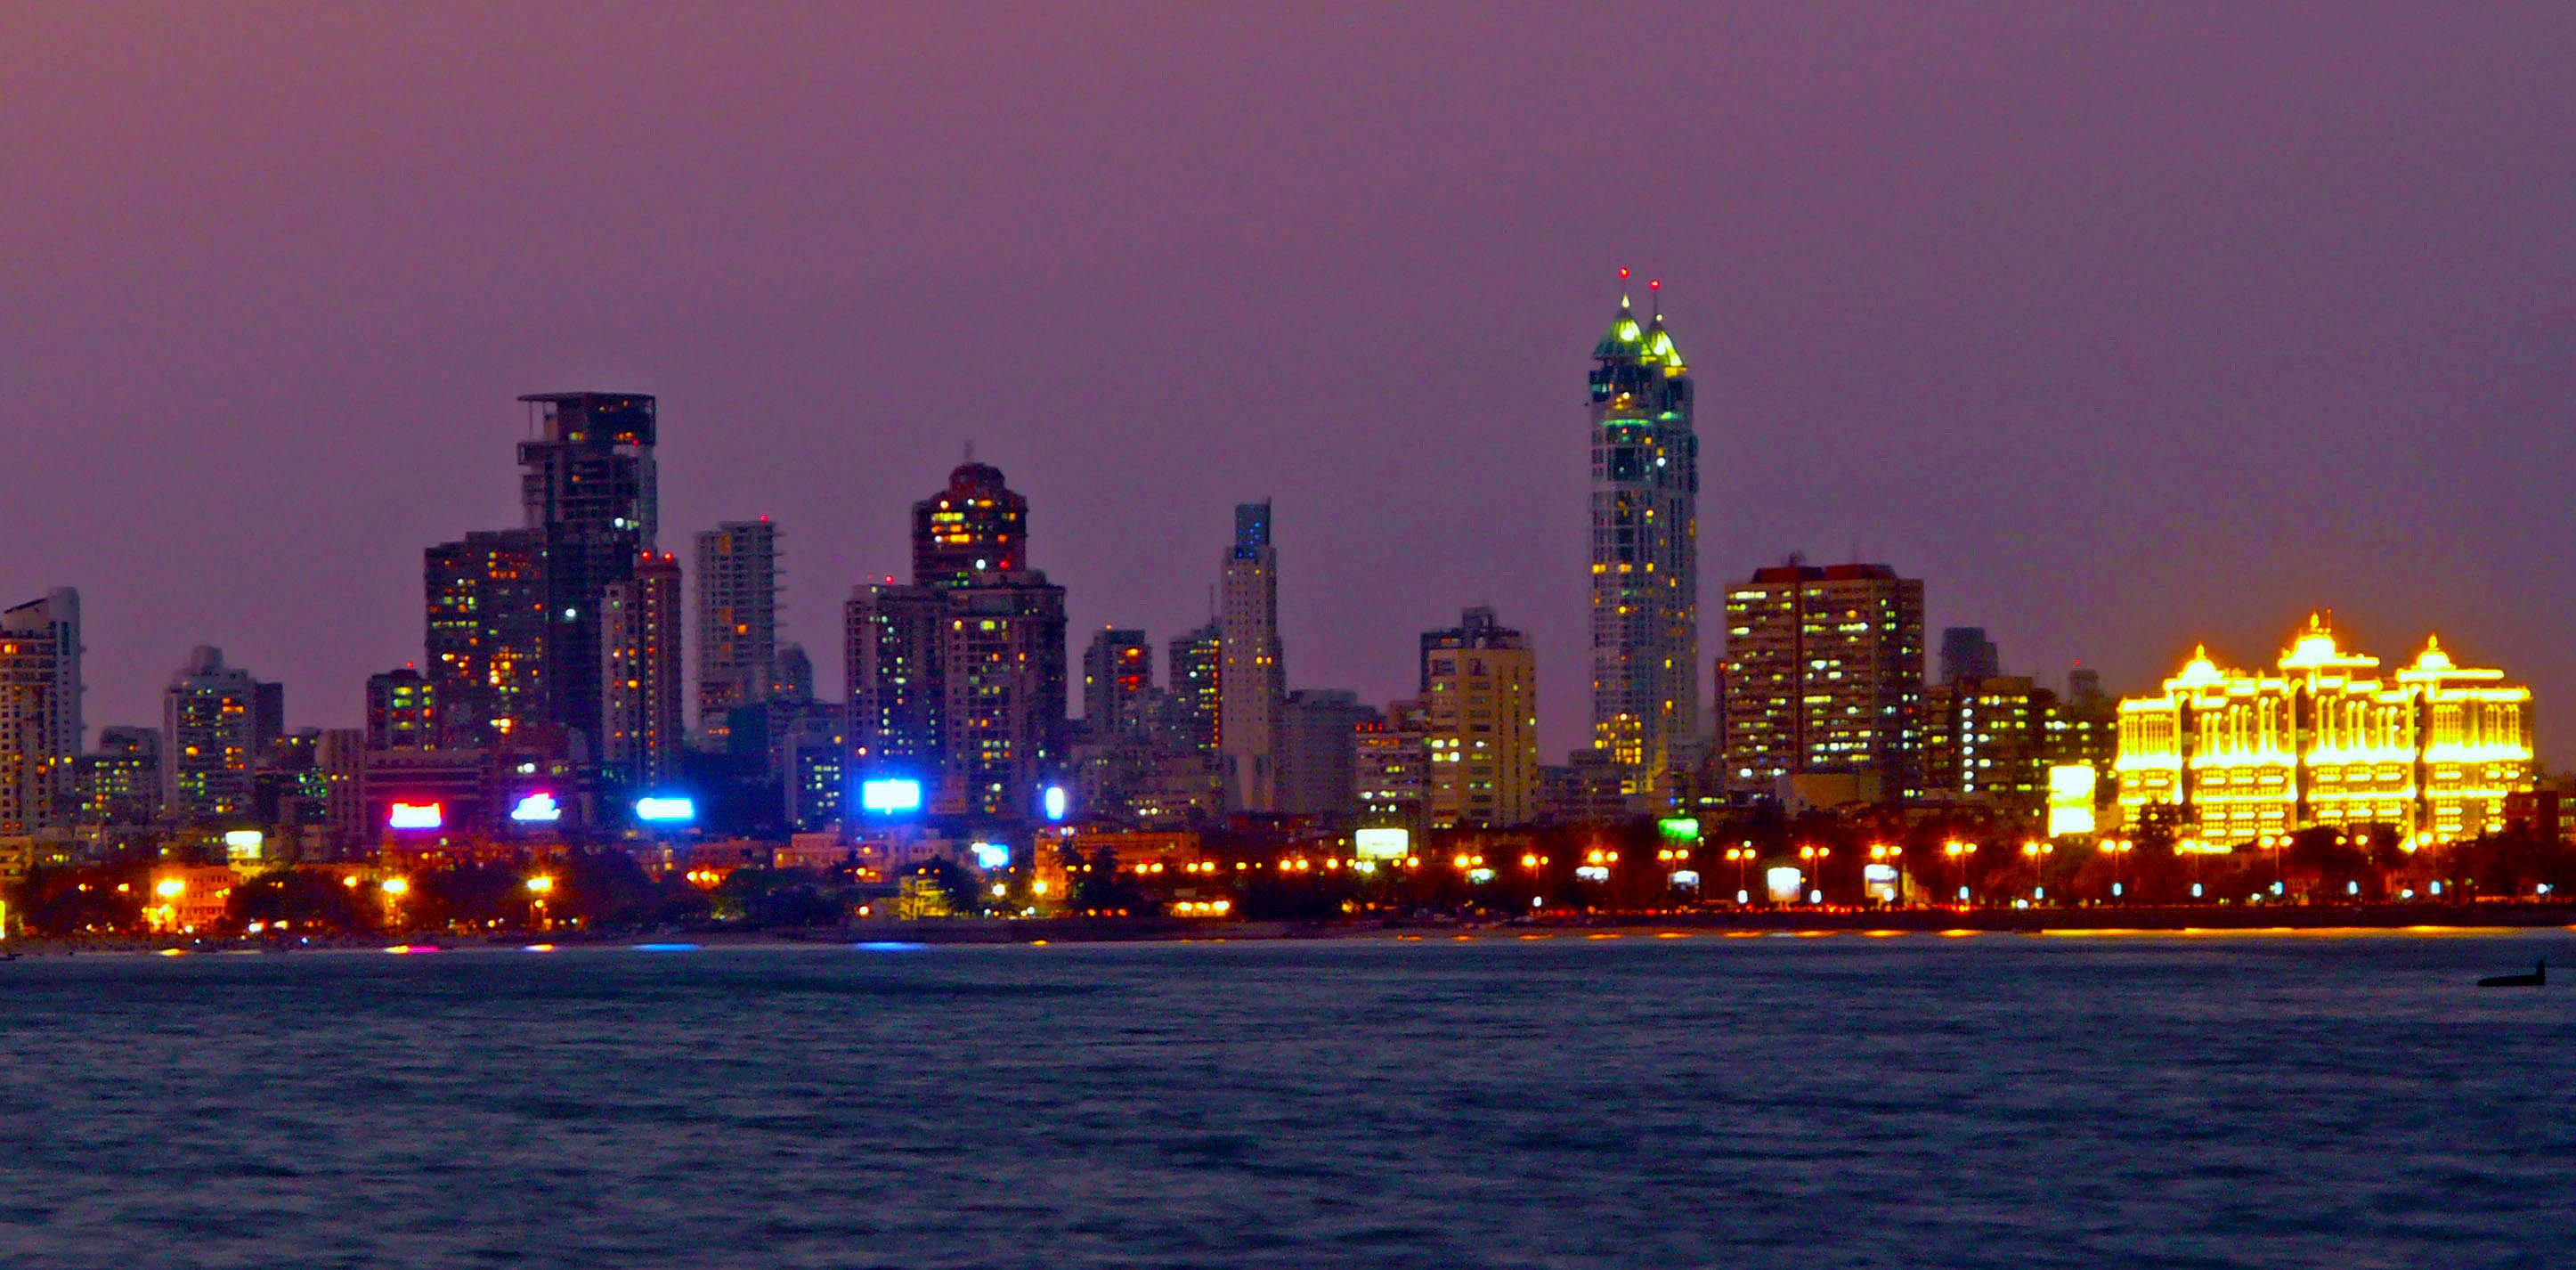 Mumbai Skyline at Night